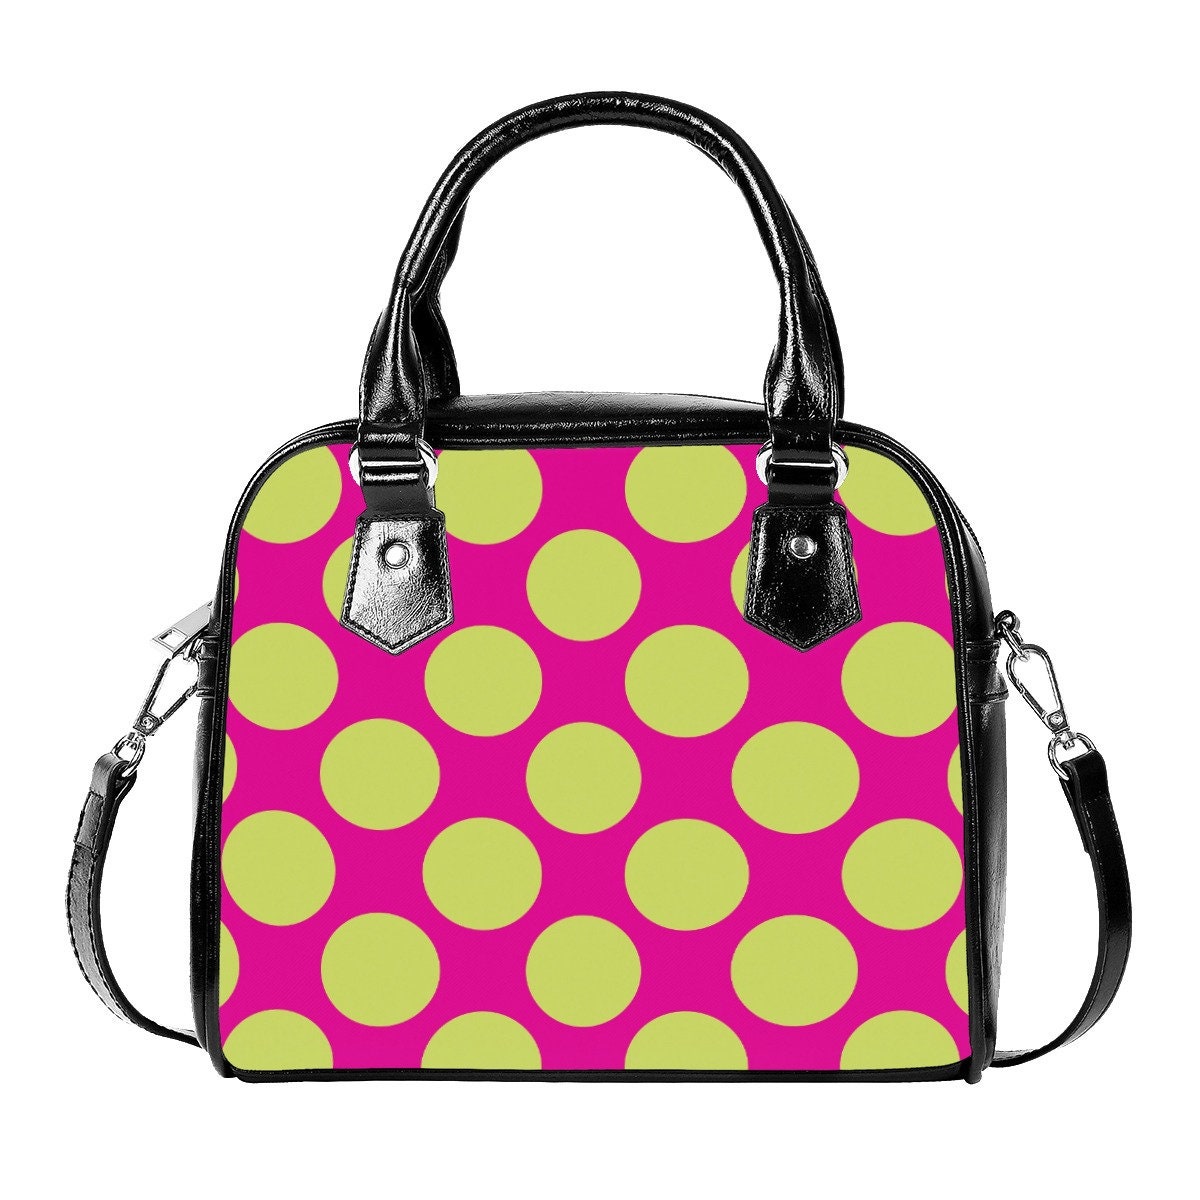 Polka Dot Handtasche, Pink Grün Polka Dot Handtasche, Retro Handtaschen, Retro Handtaschen für Frauen, Polka Dot Handtasche, Vintage Style Handtasche, Damentaschen